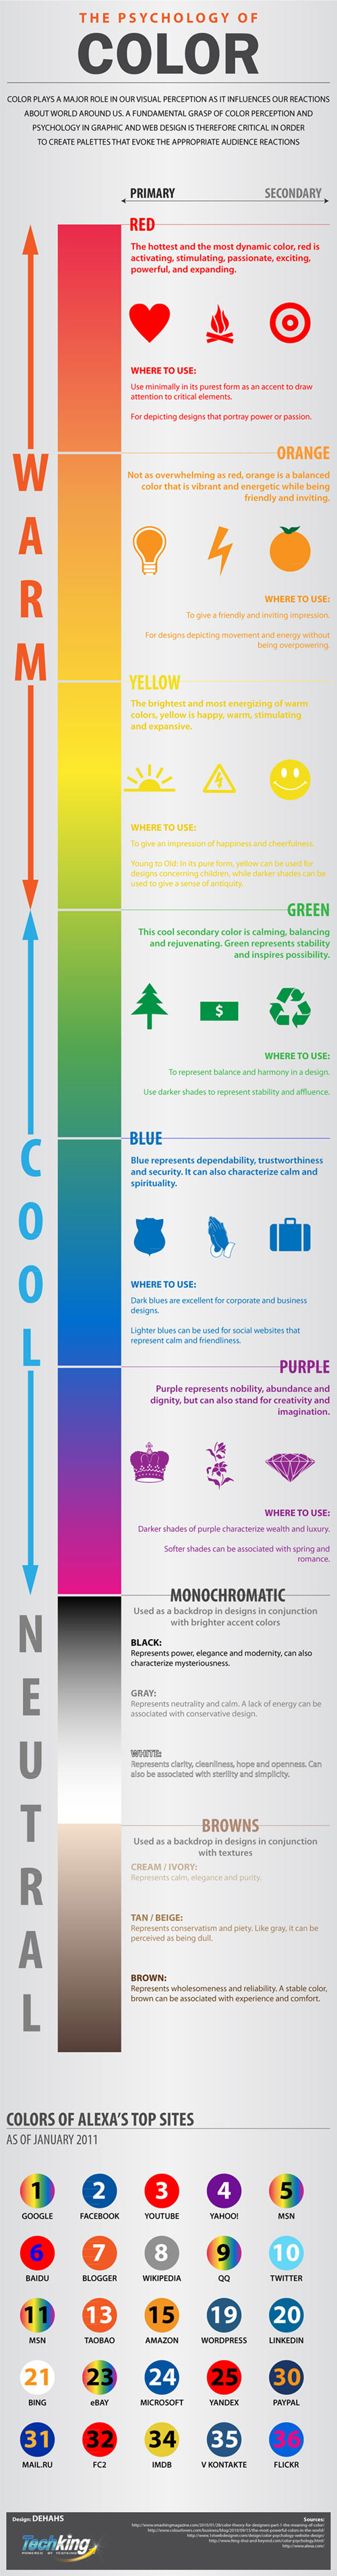 psycologie des couleurs